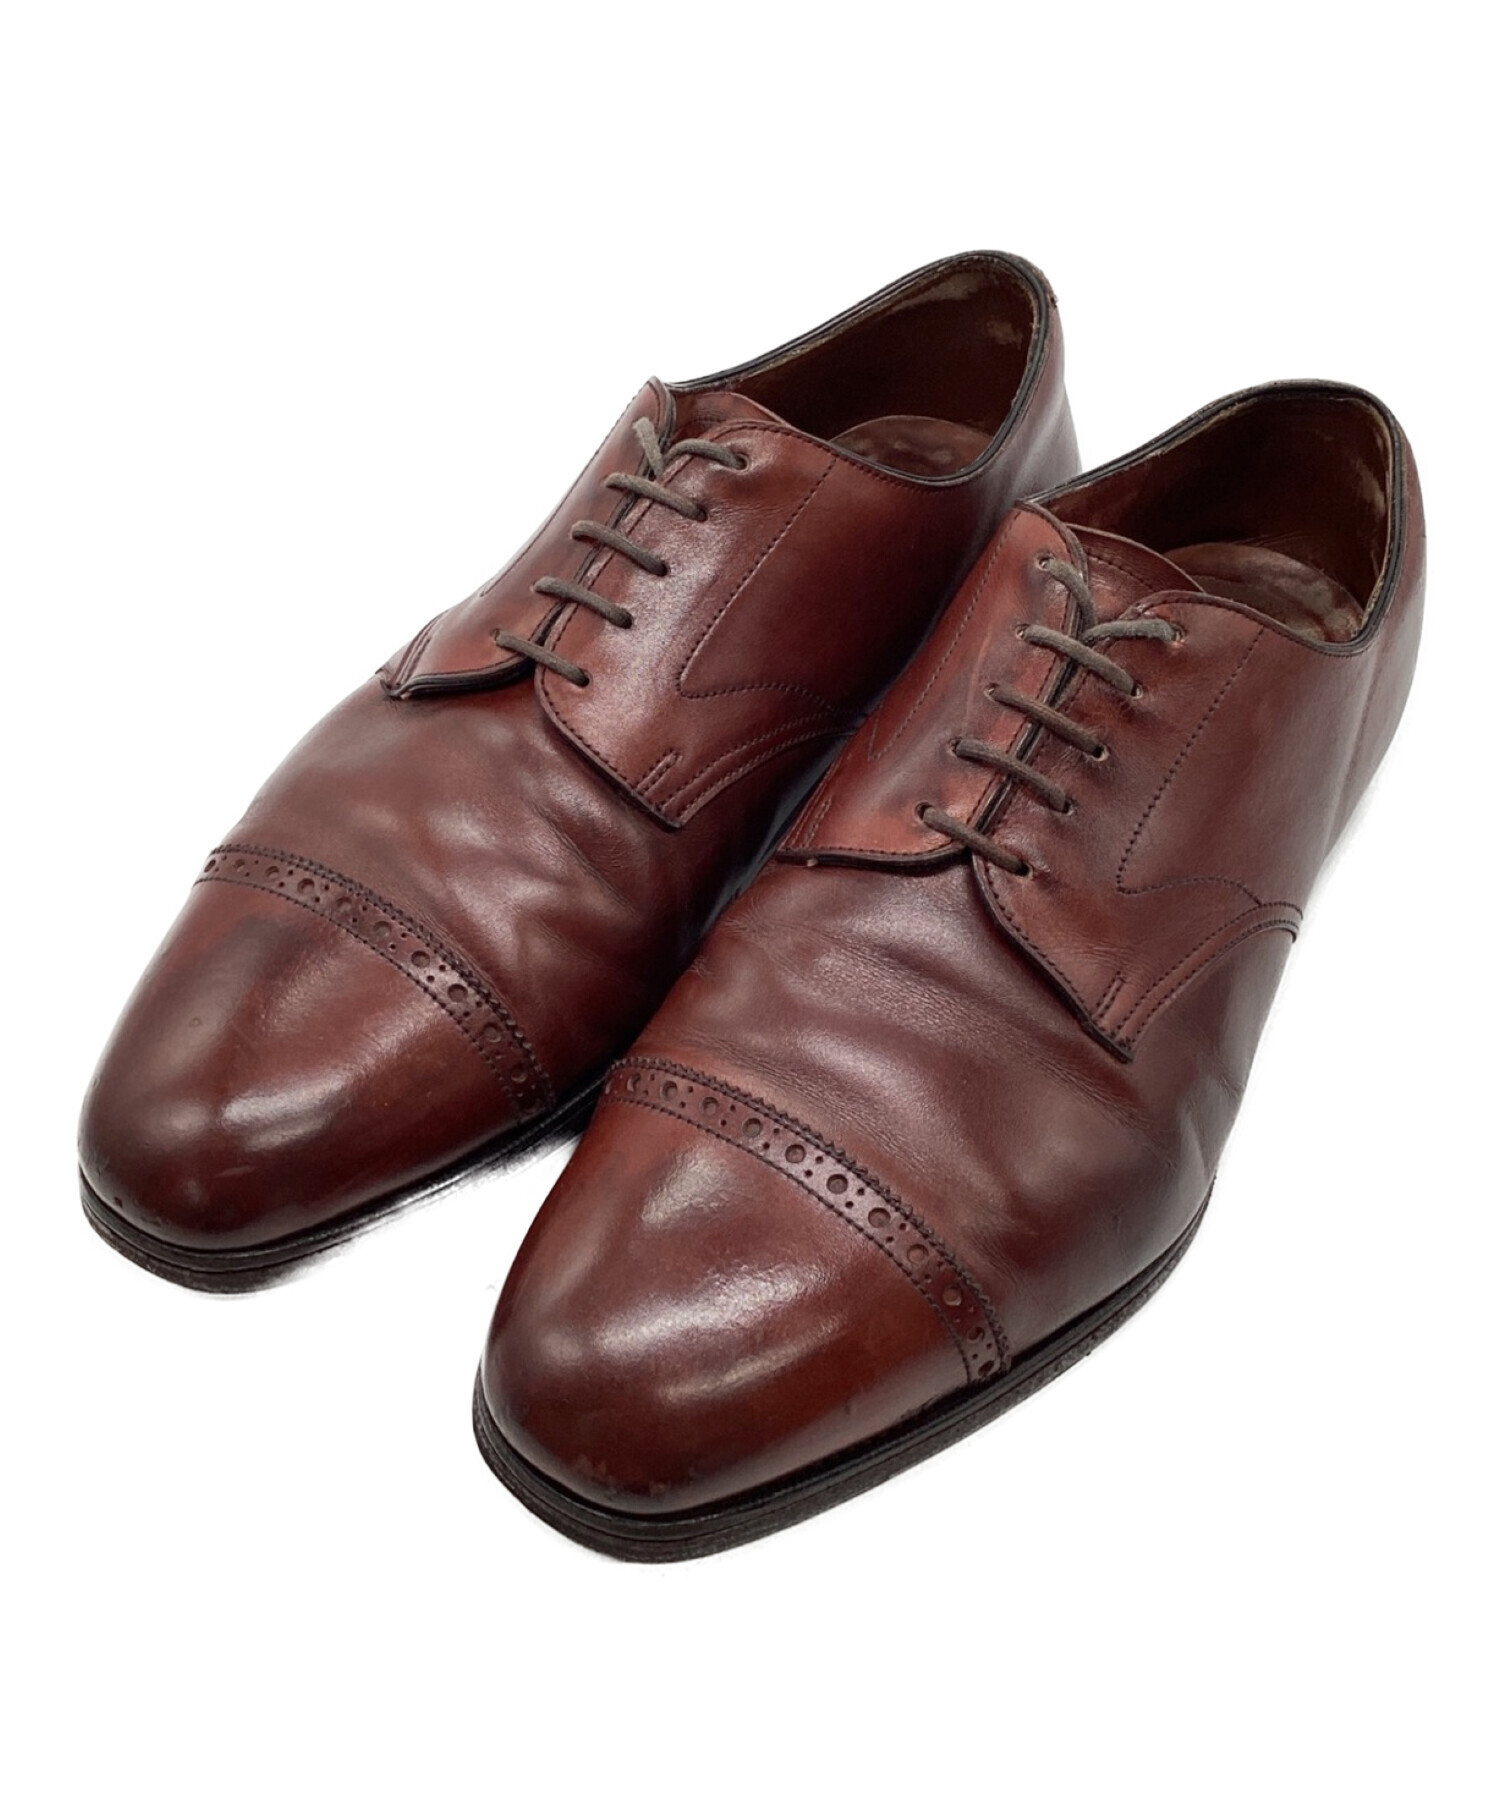 エドワード・グリーン EDWARD GREEN レザーシューズ ダービーシューズ スウェードレザー プレーントゥ 革靴 メンズ 7E(25.5~26cm相当) ブラウン